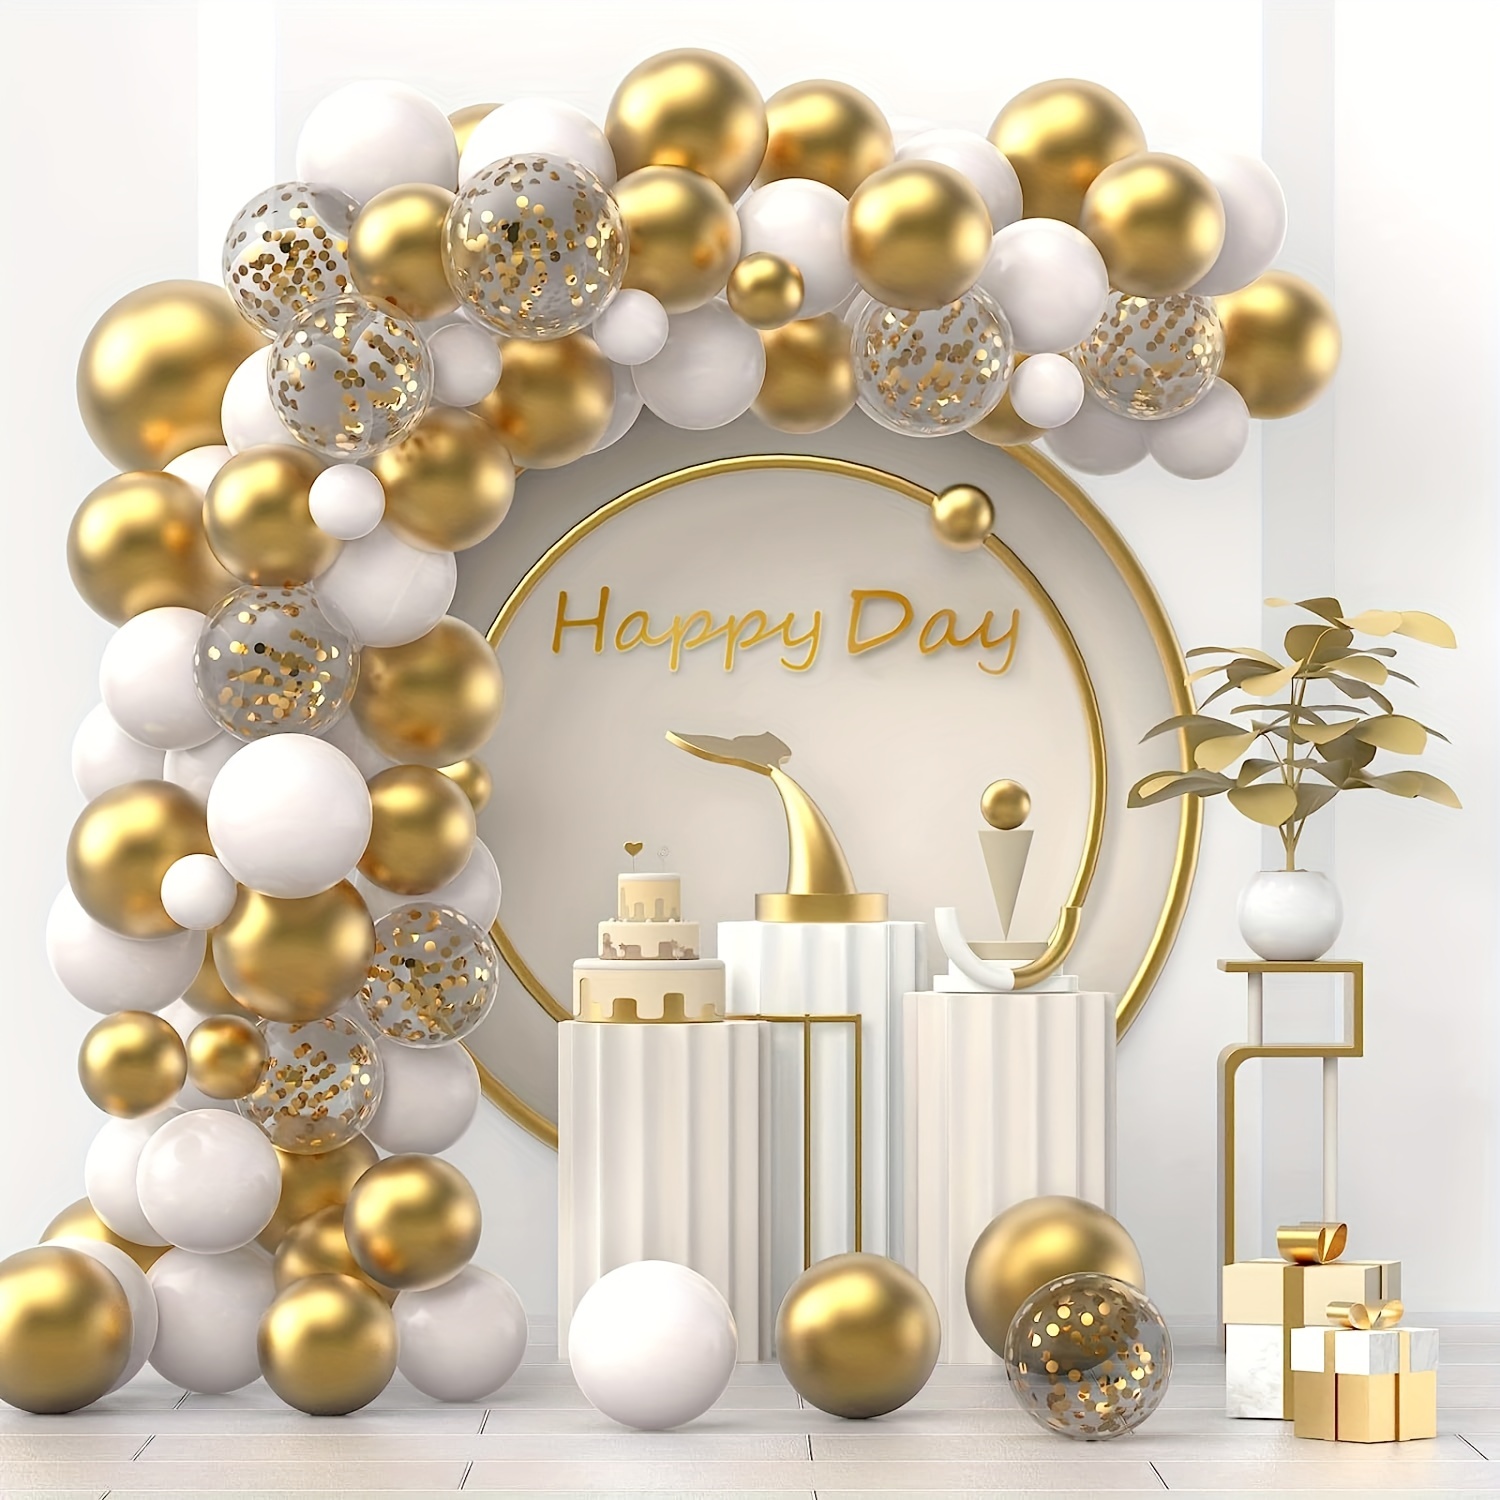 Globos blancos y dorados / Globos de confeti dorados / Globos blancos /  Globos de oro cromado / Decoración de despedida de soltera blanca y dorada  / Boda -  México